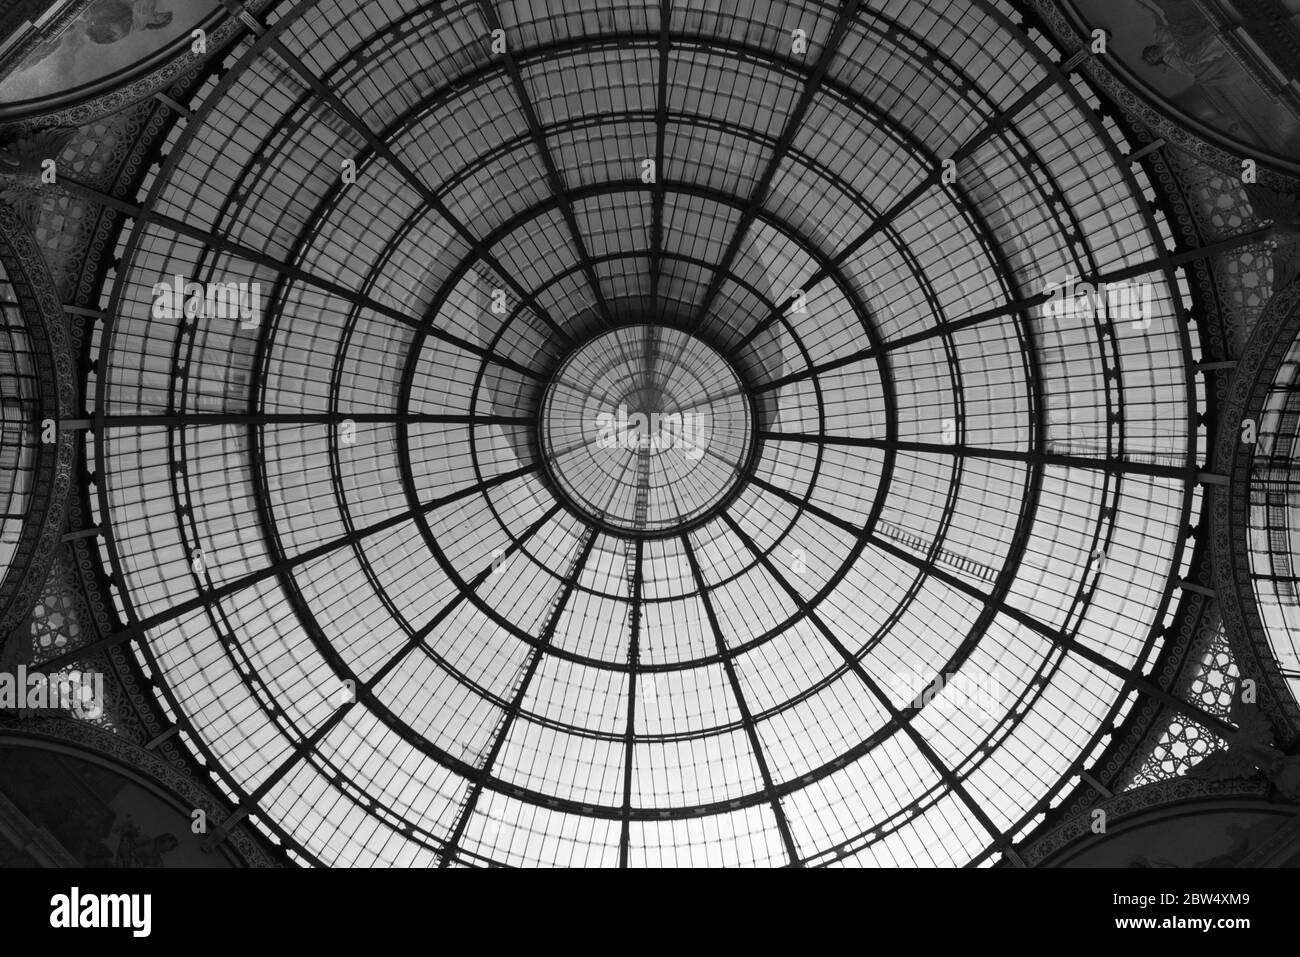 MAILAND, ITALIEN - 16, MÄRZ 2018: Schwarz-weiß-Bild der architektonischen Decke der Galleria Vittorio Emanuele II, einem alten Einkaufszentrum in Mailand, Stockfoto